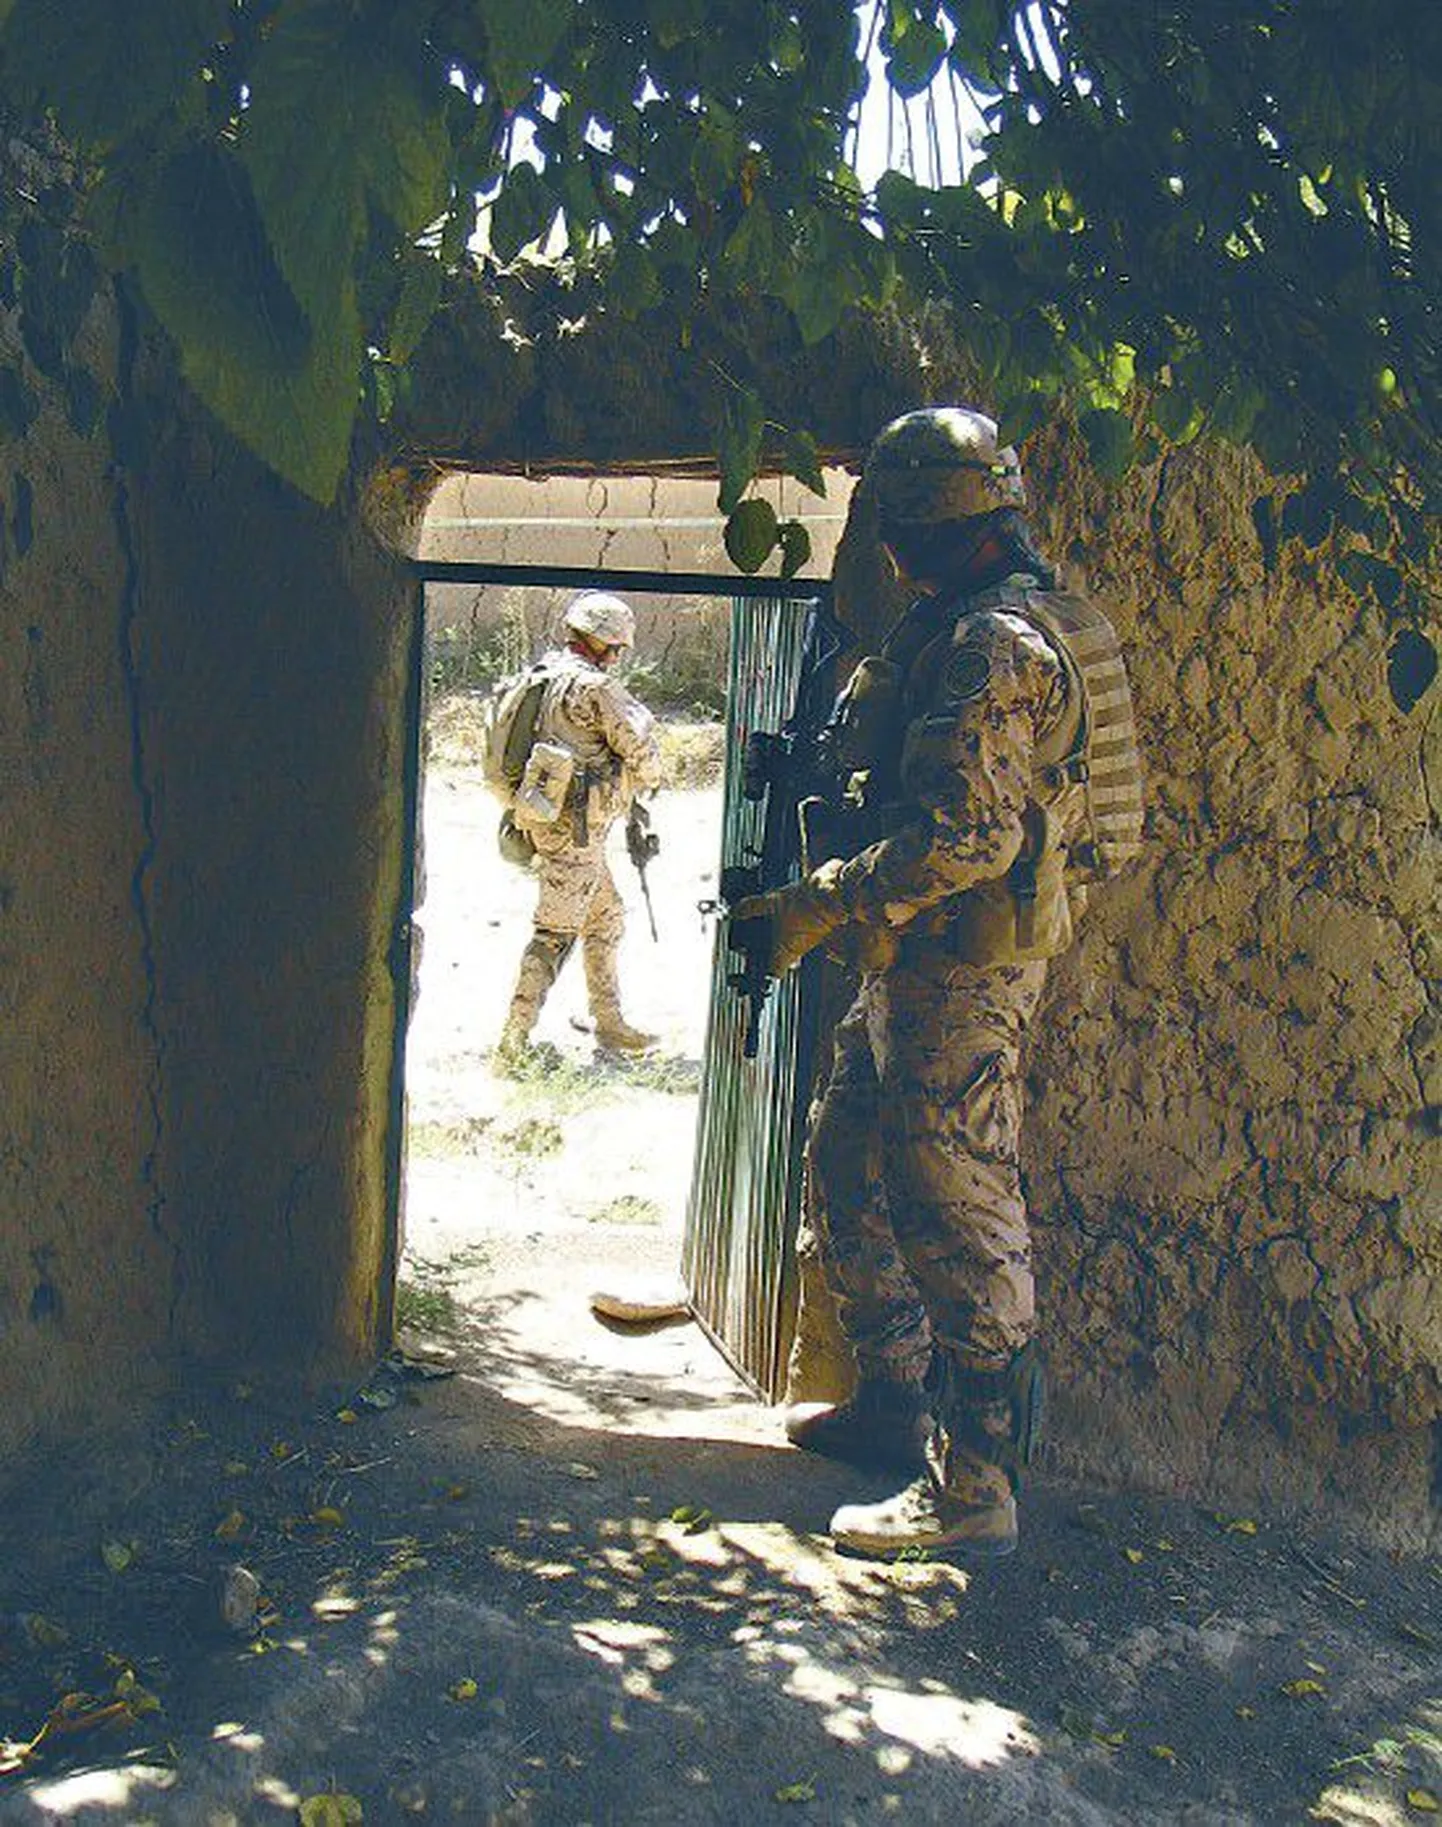 Eesti sõdurid Afganistanis Helmandi provintsis patrullimas.